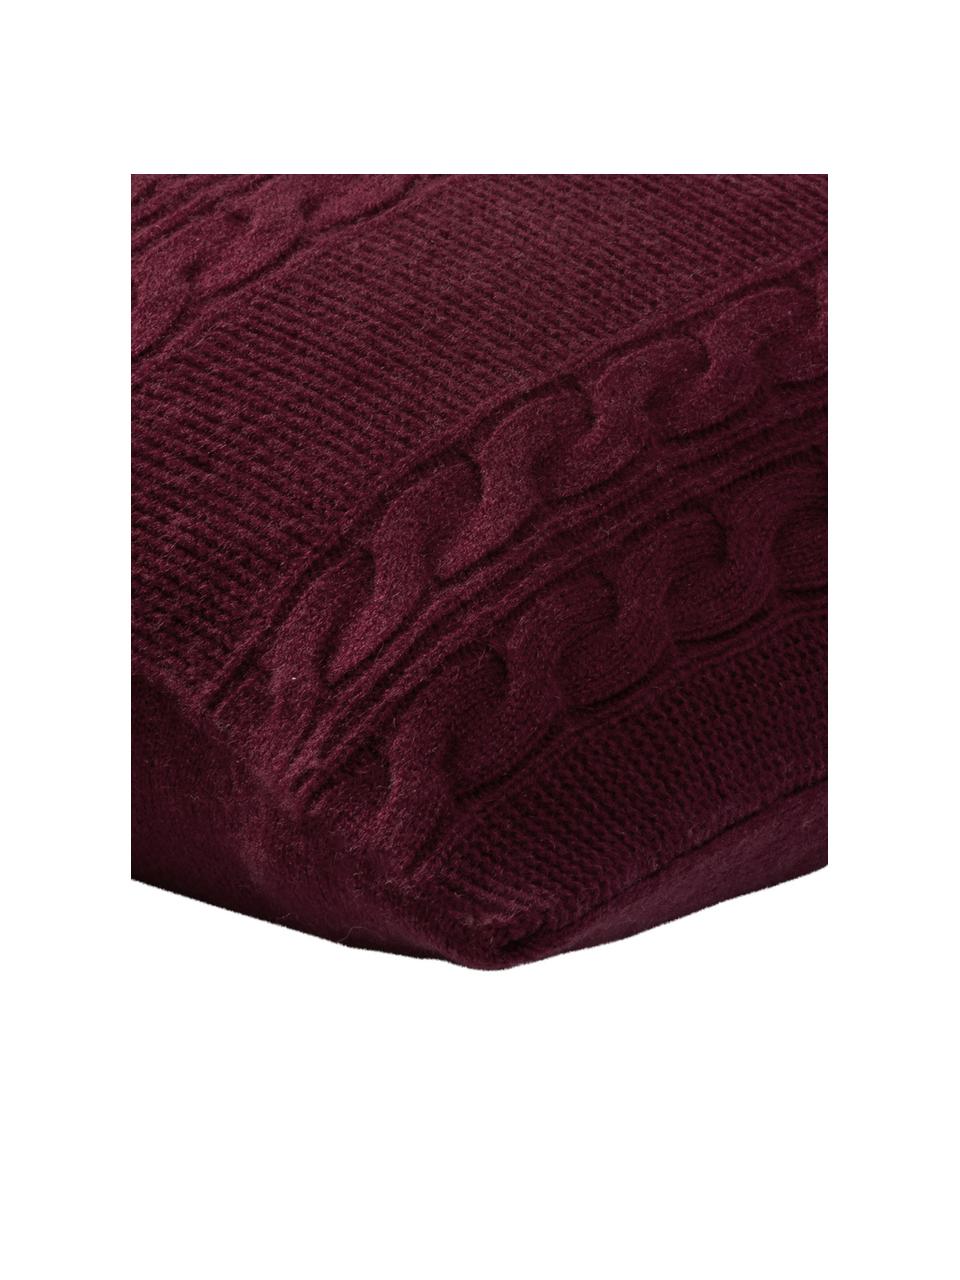 Poszewka na poduszkę z czystego kaszmiru Leonie, 100% kaszmir
Kaszmir to bardzo miękka, wygodna i ciepła tkanina, Ciemny czerwony, S 40 x D 40 cm